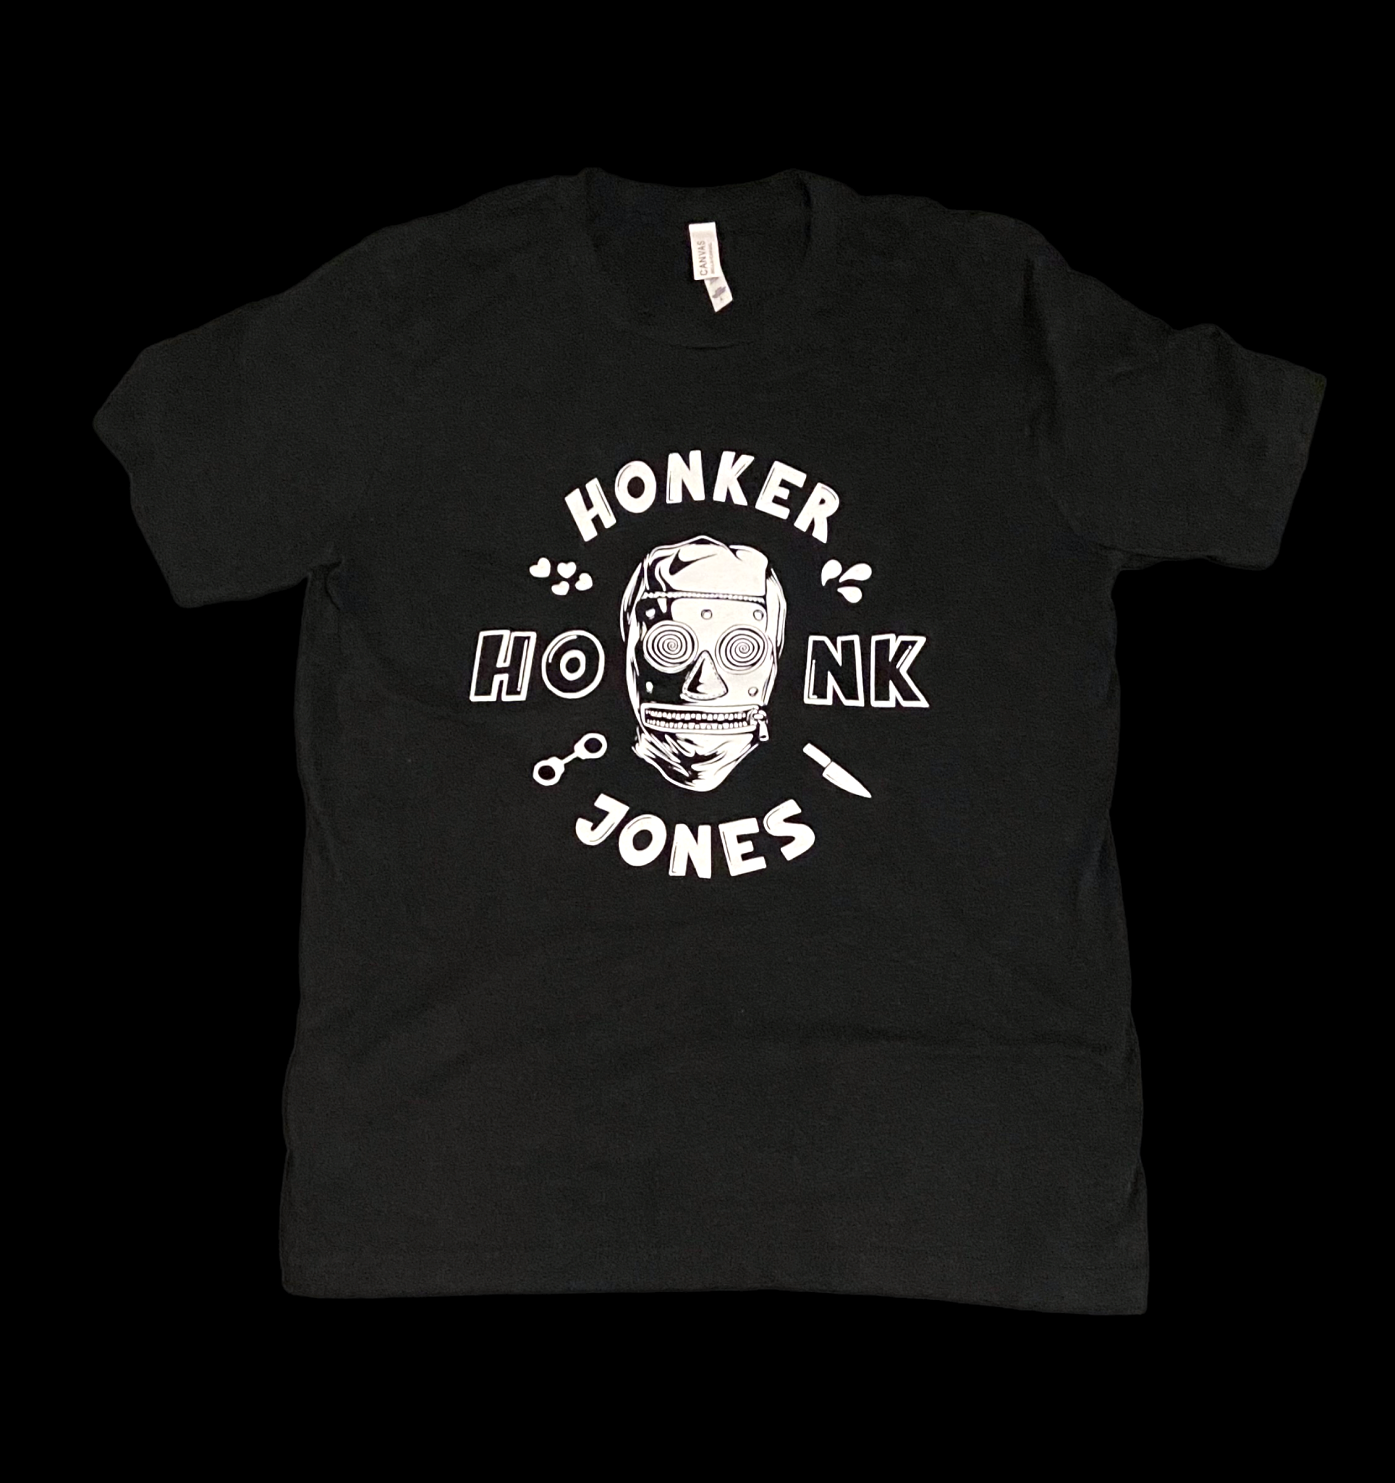 Honker Jones T-Shirt